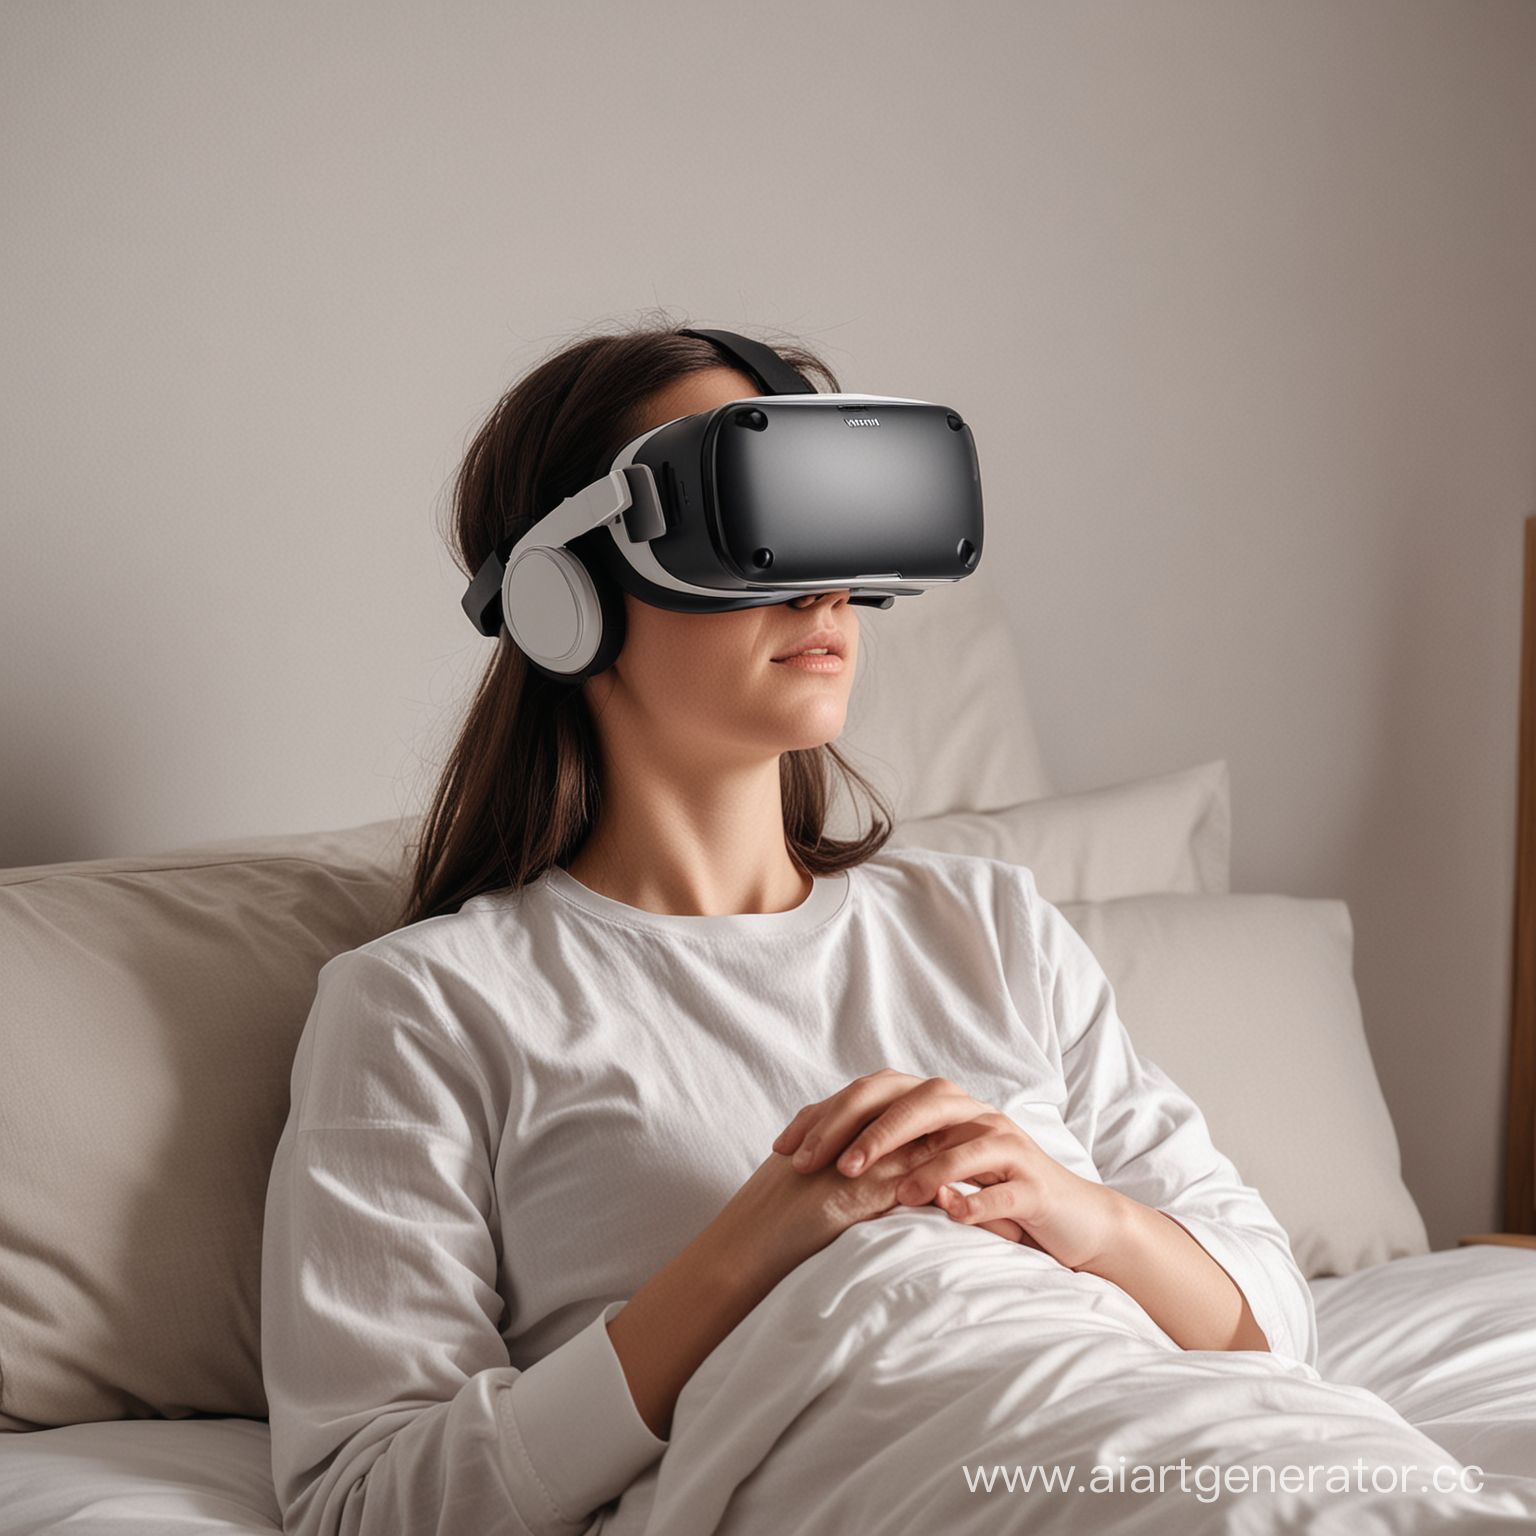 Человек использует VR-технологии для релаксации и засыпания